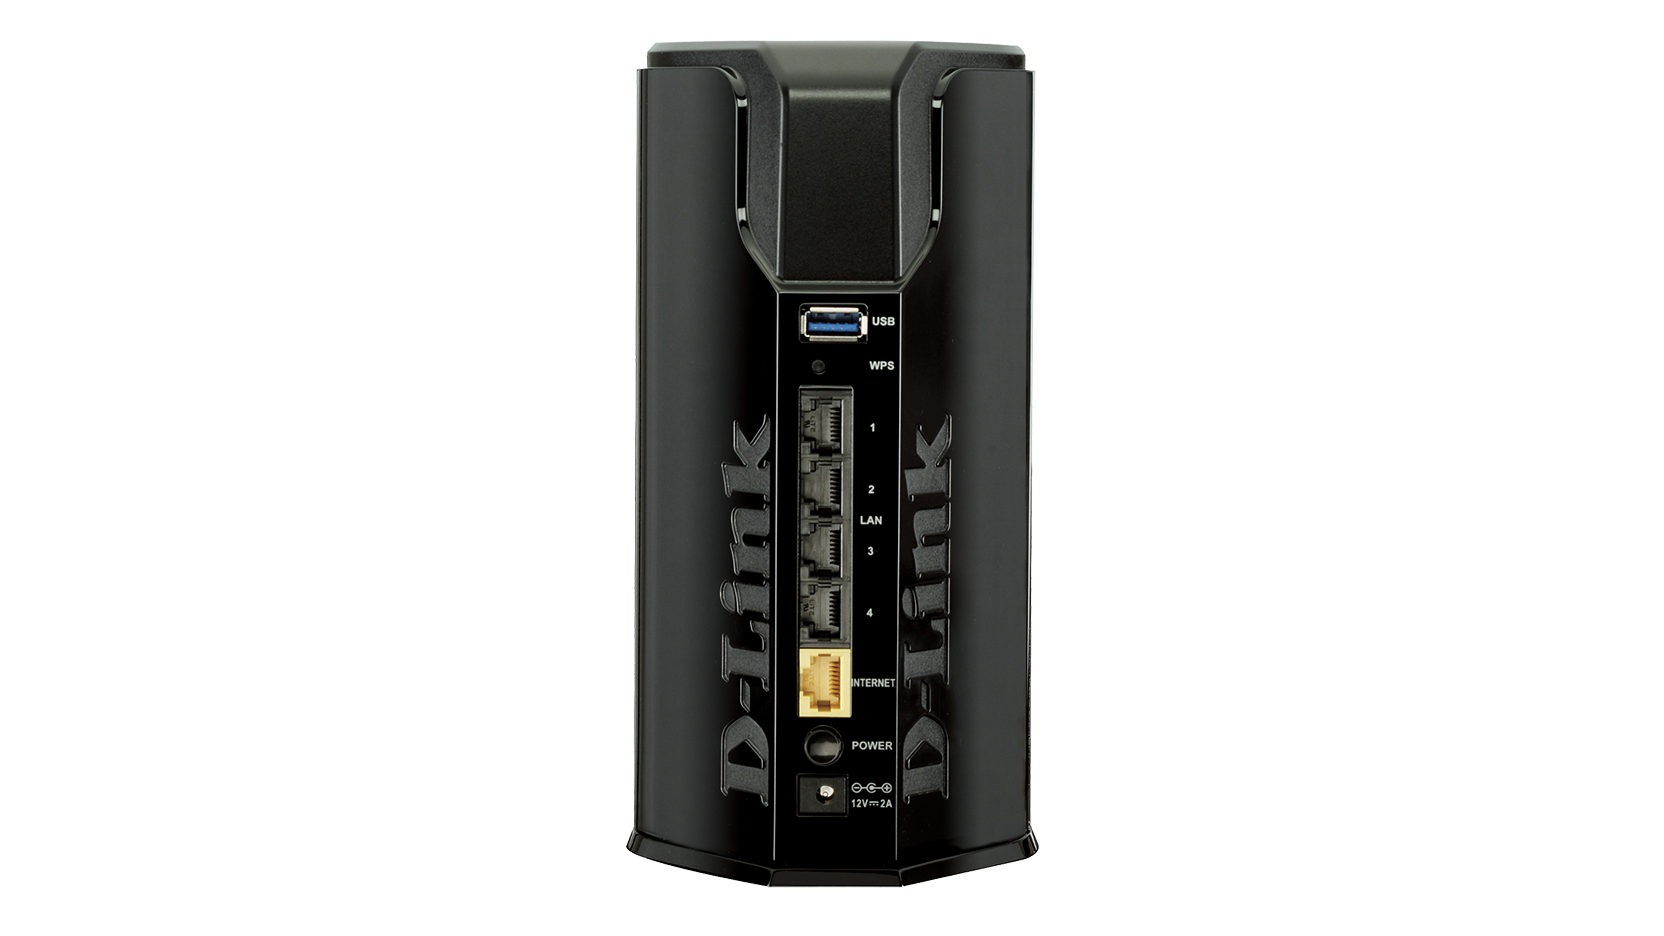 D-Link DIR-860L Wireless AC1200 USB3.0 Cloud Router